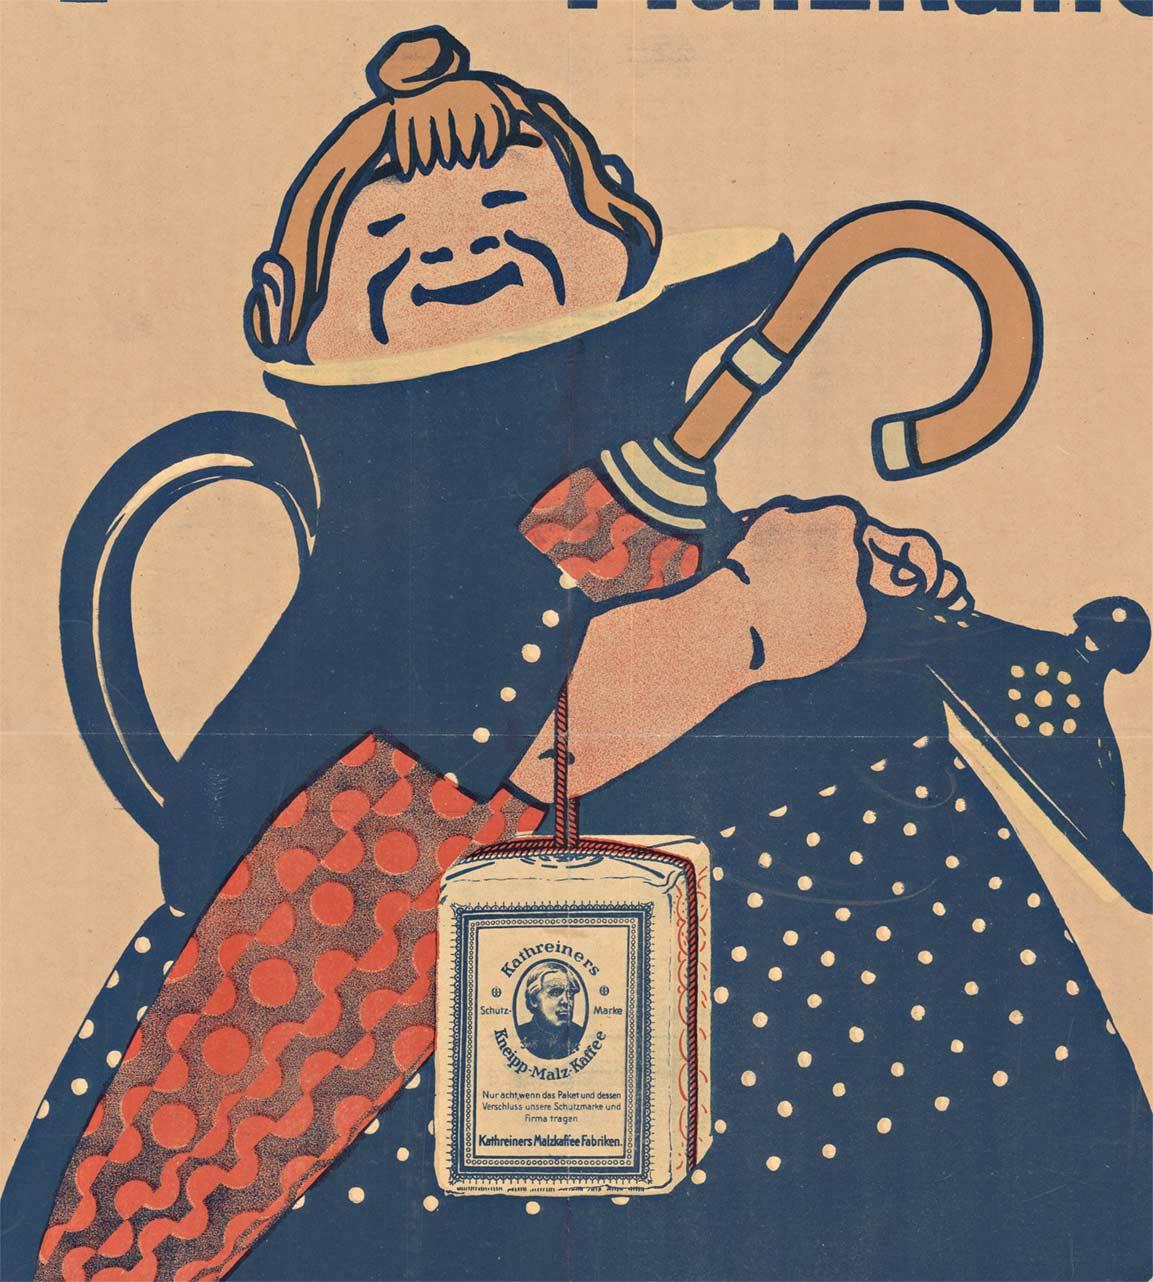 Original Kathreiners Malzkaffee Vintage-Kaffeeplakat – Print von Unknown